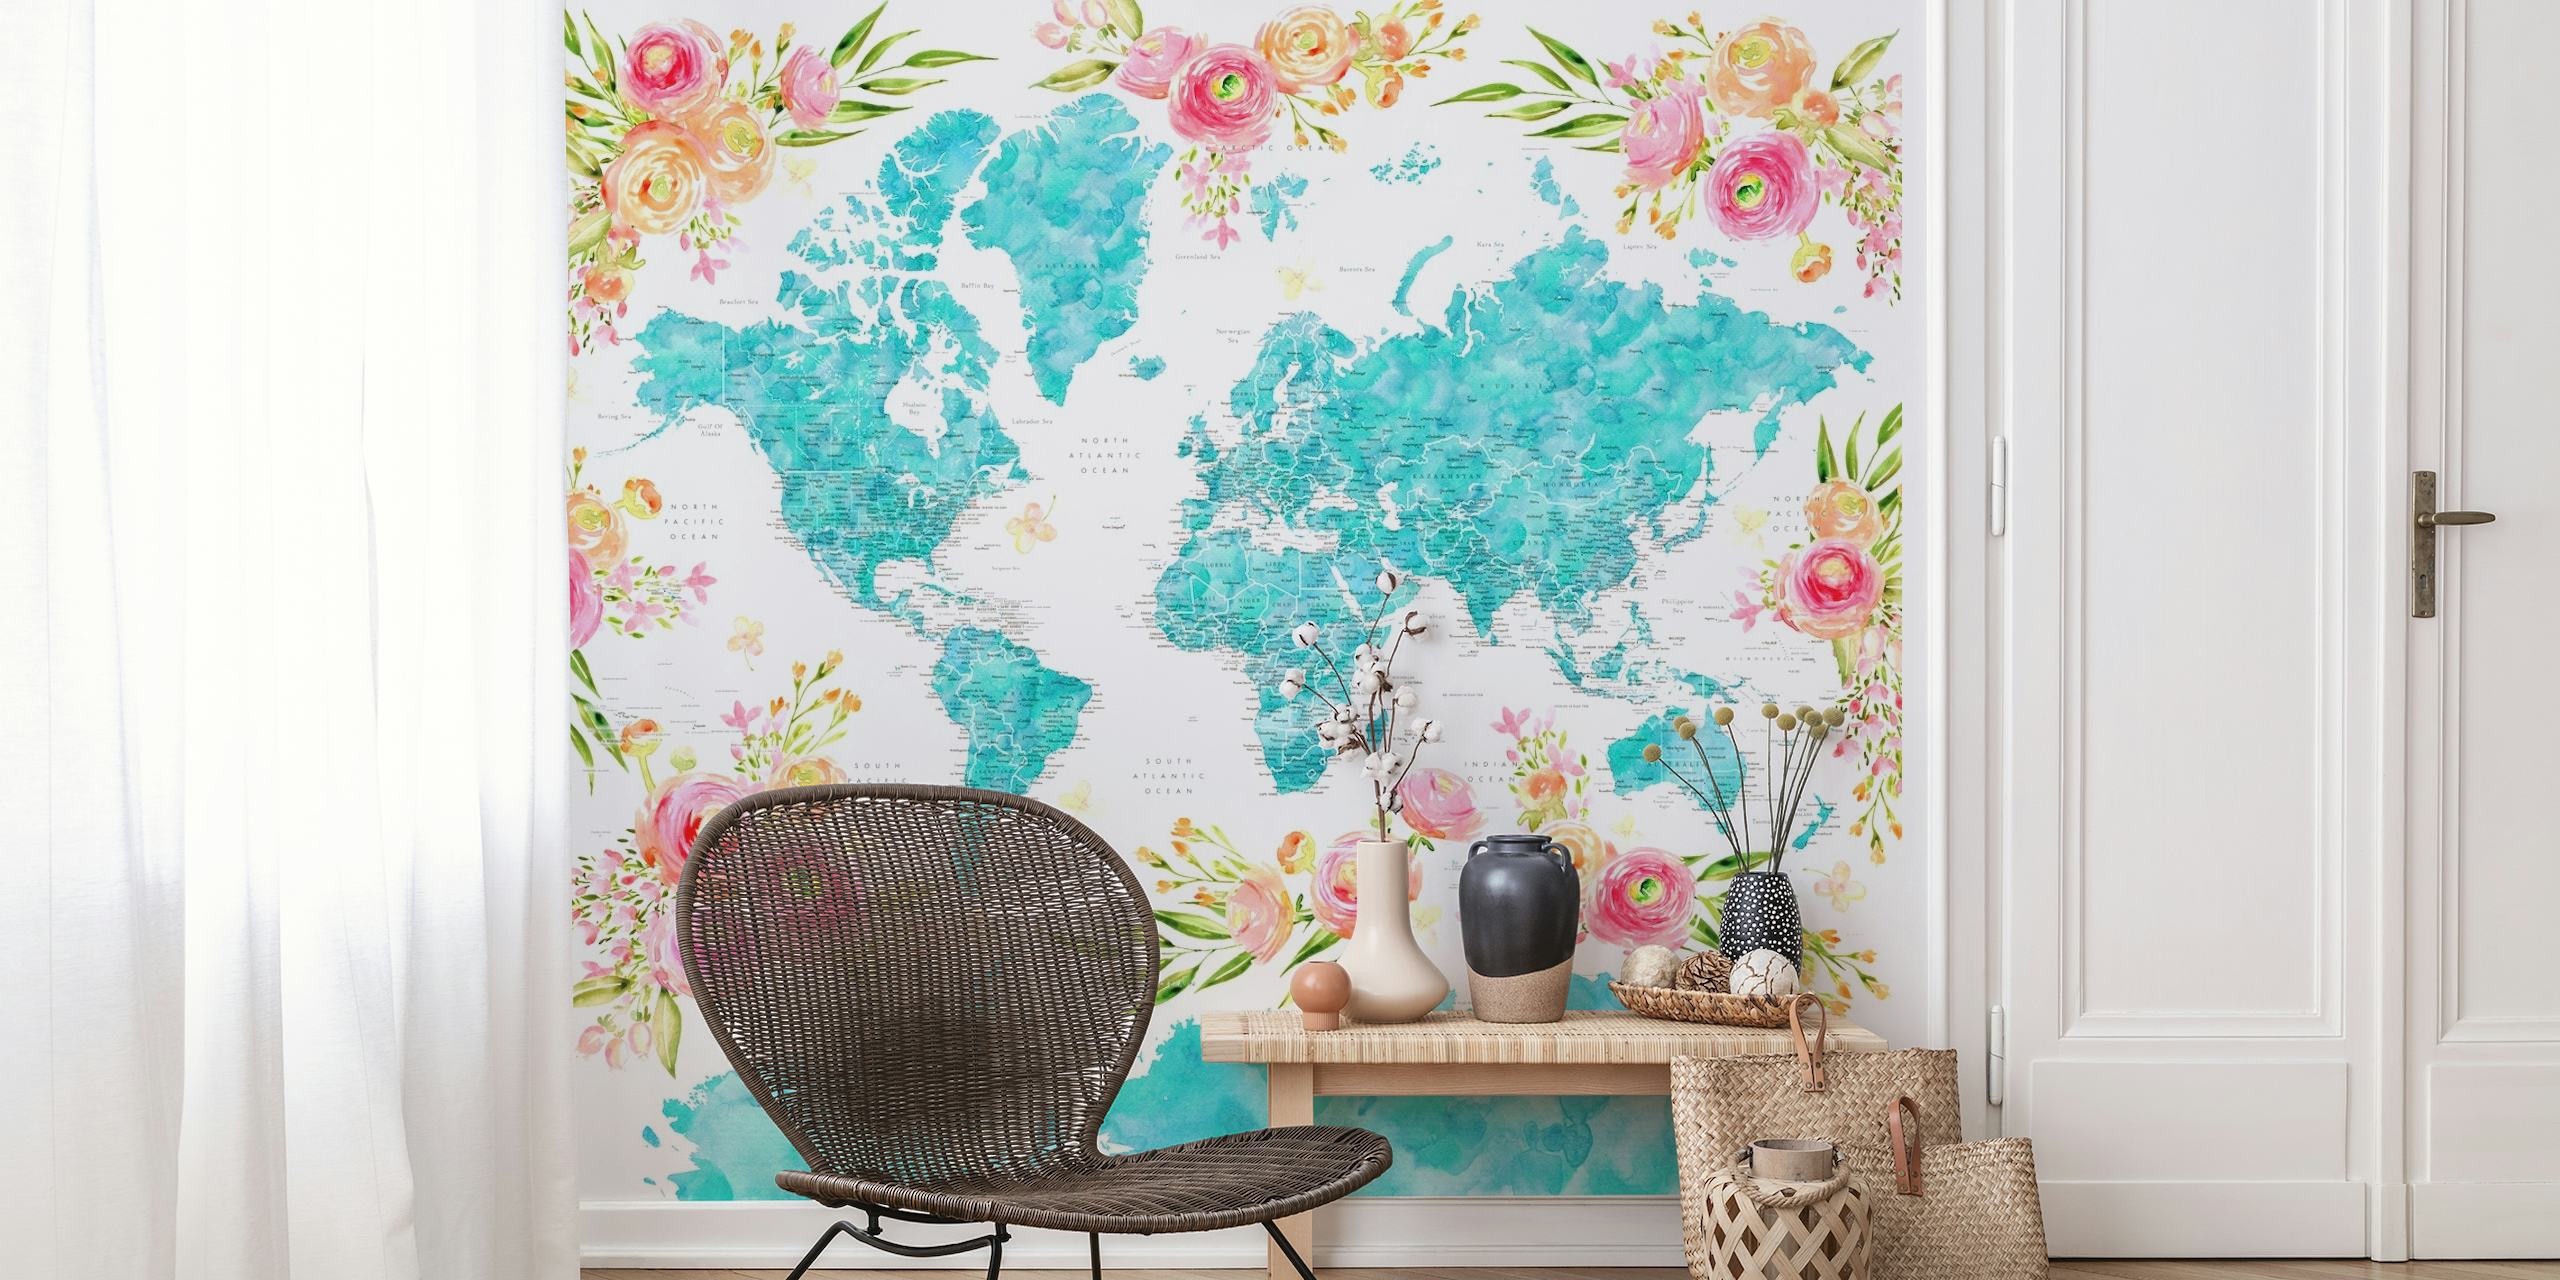 Fotomural vinílico colorido de mapa-múndi com padrões florais decorando os continentes